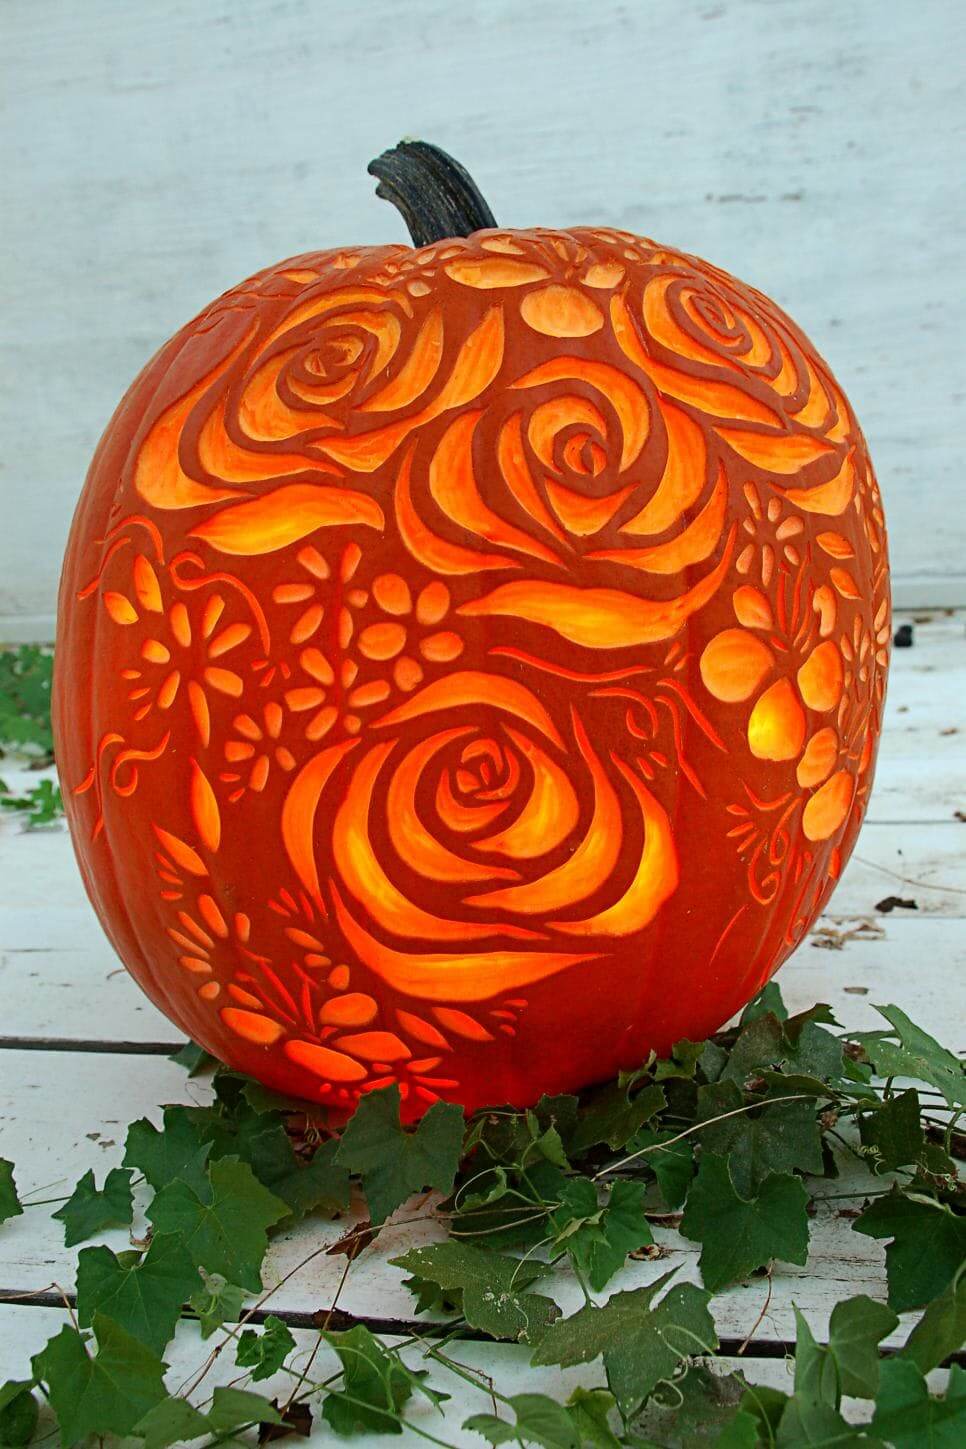 DIY Pumpkin Carving Ideas: Rose Petals